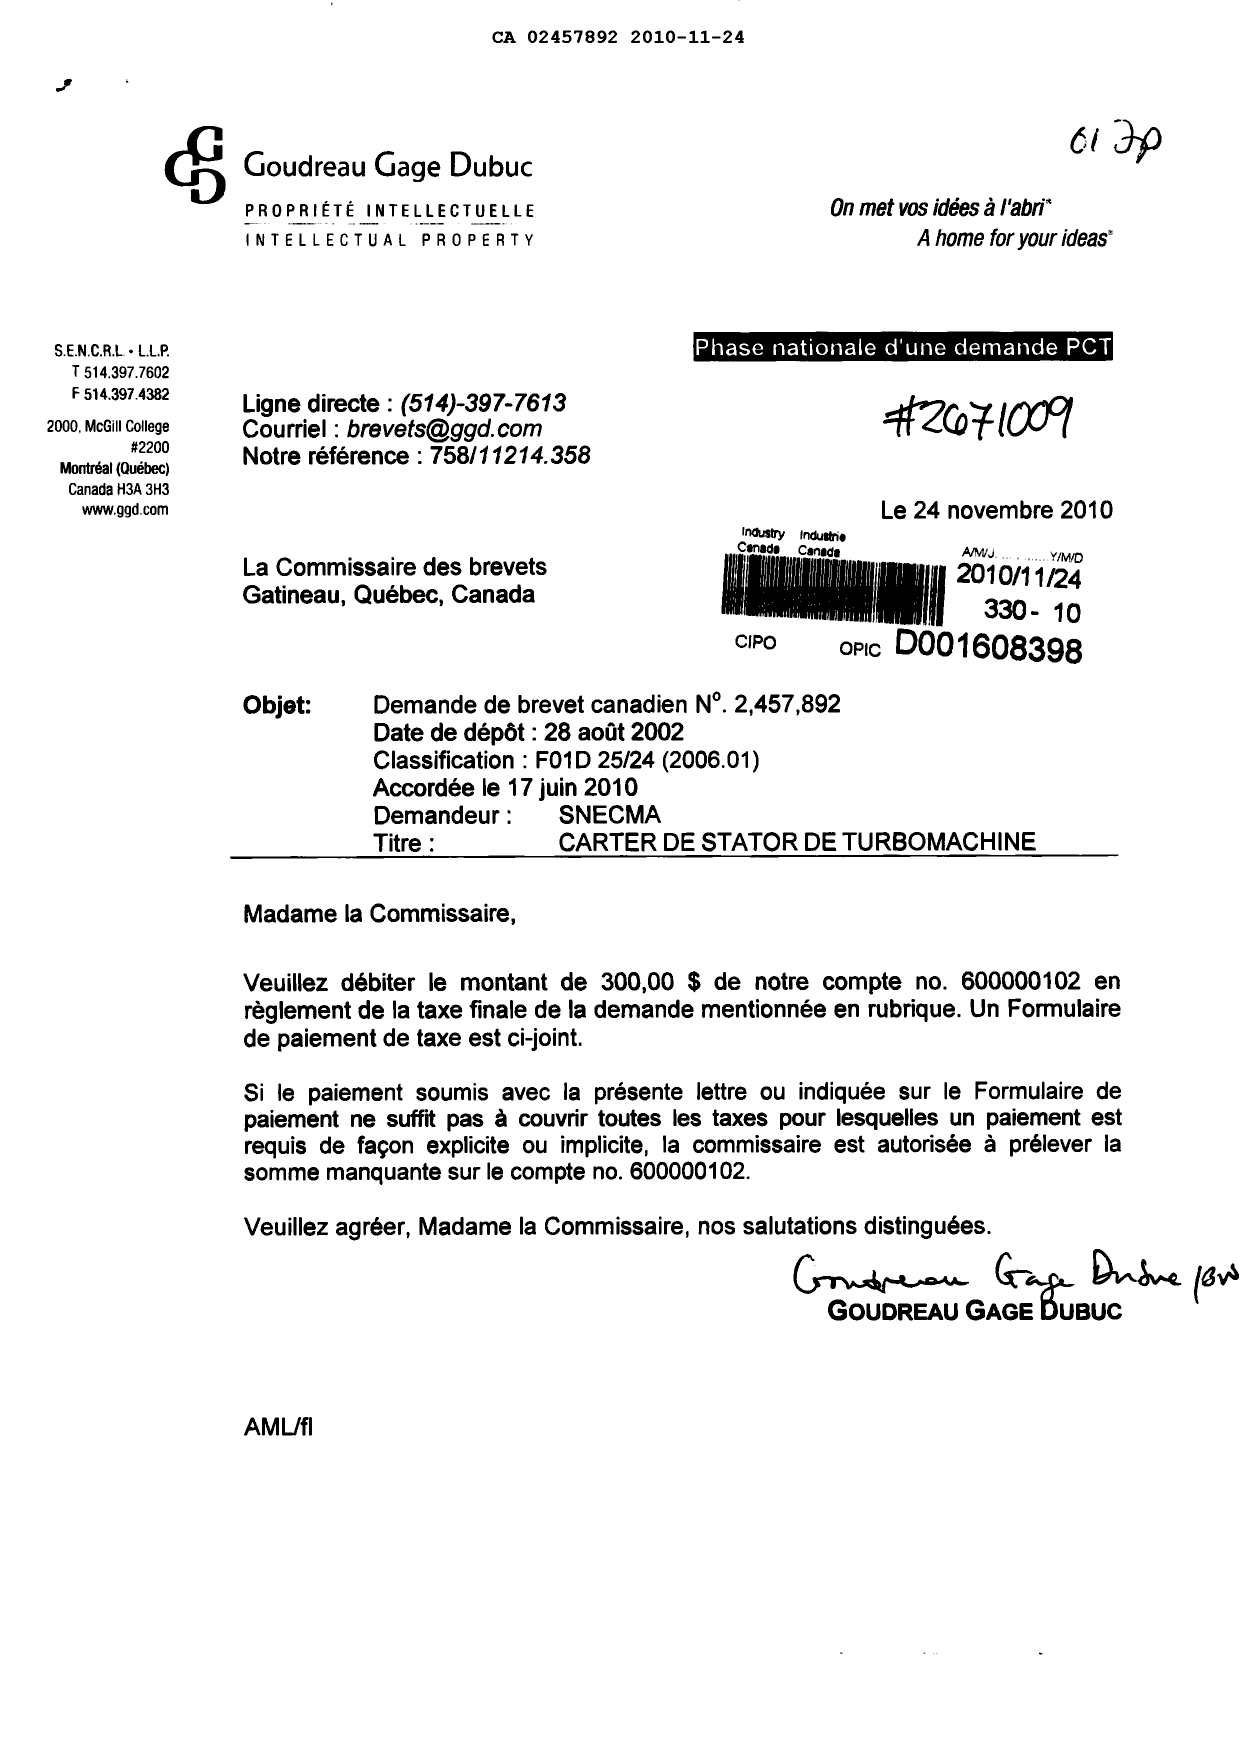 Document de brevet canadien 2457892. Correspondance 20101124. Image 1 de 1